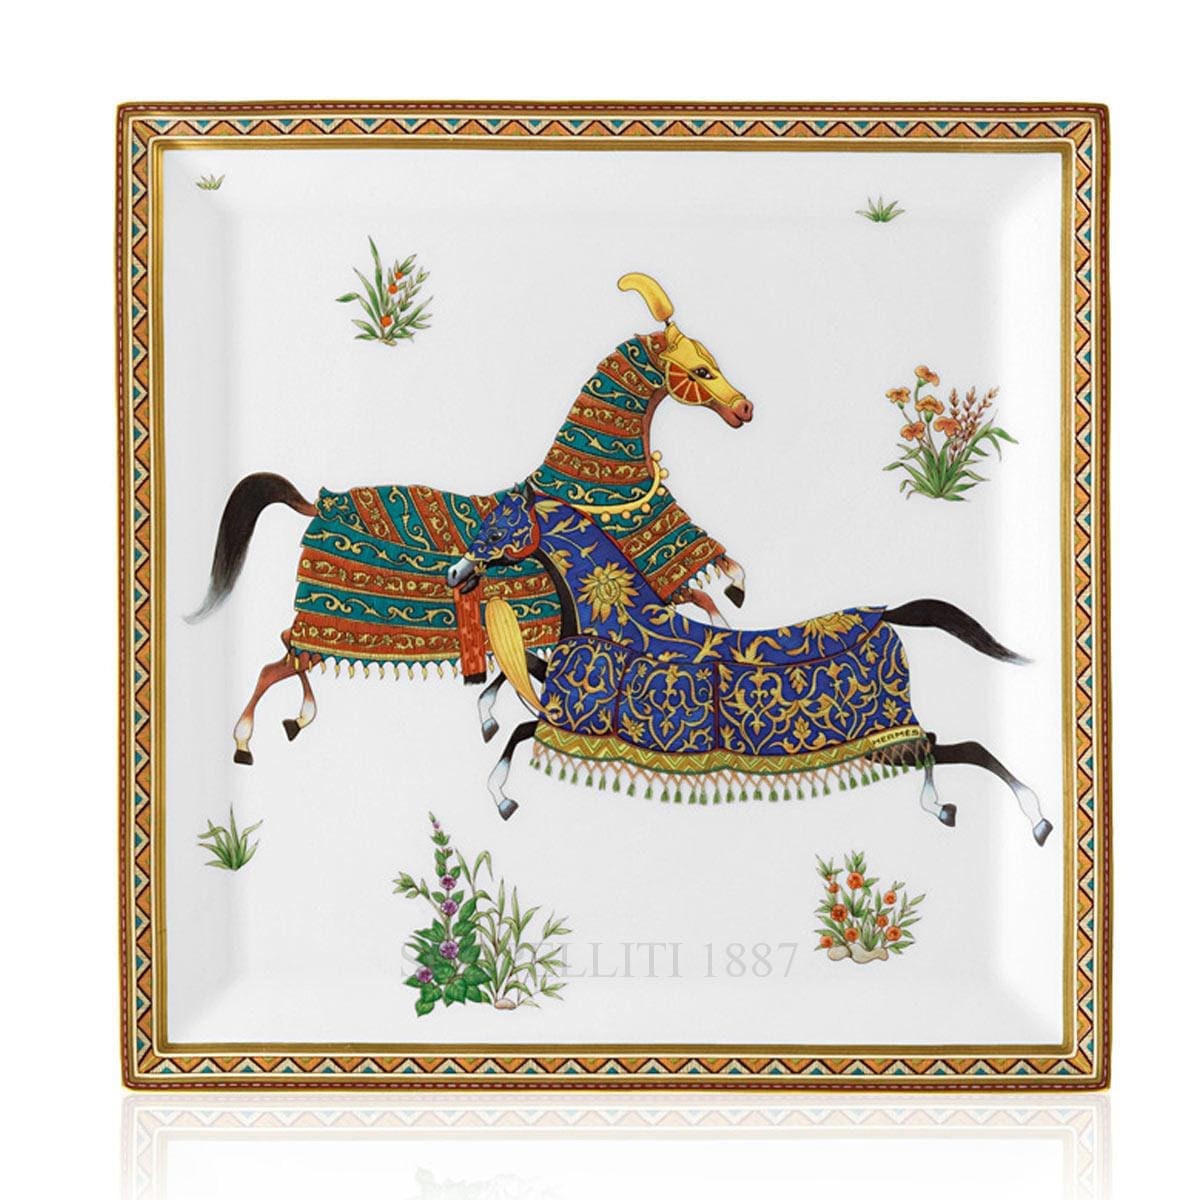 hermes paris cheval dorient designer porcelain square plate